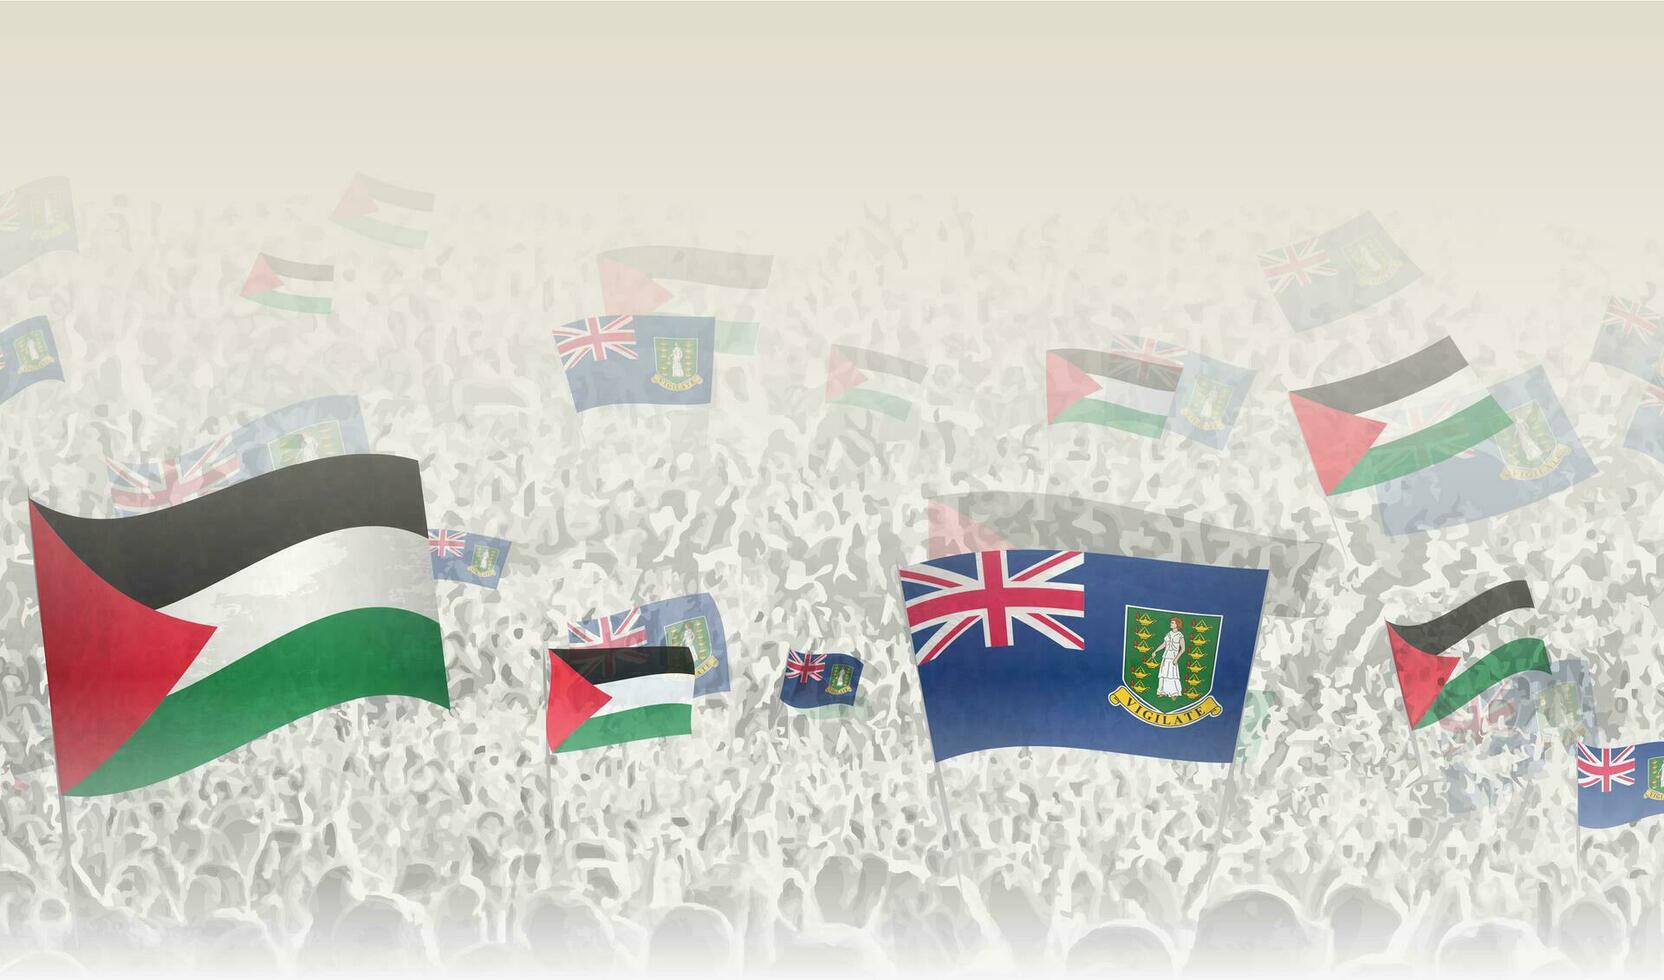 Palestina y británico Virgen islas banderas en un multitud de aplausos gente. vector